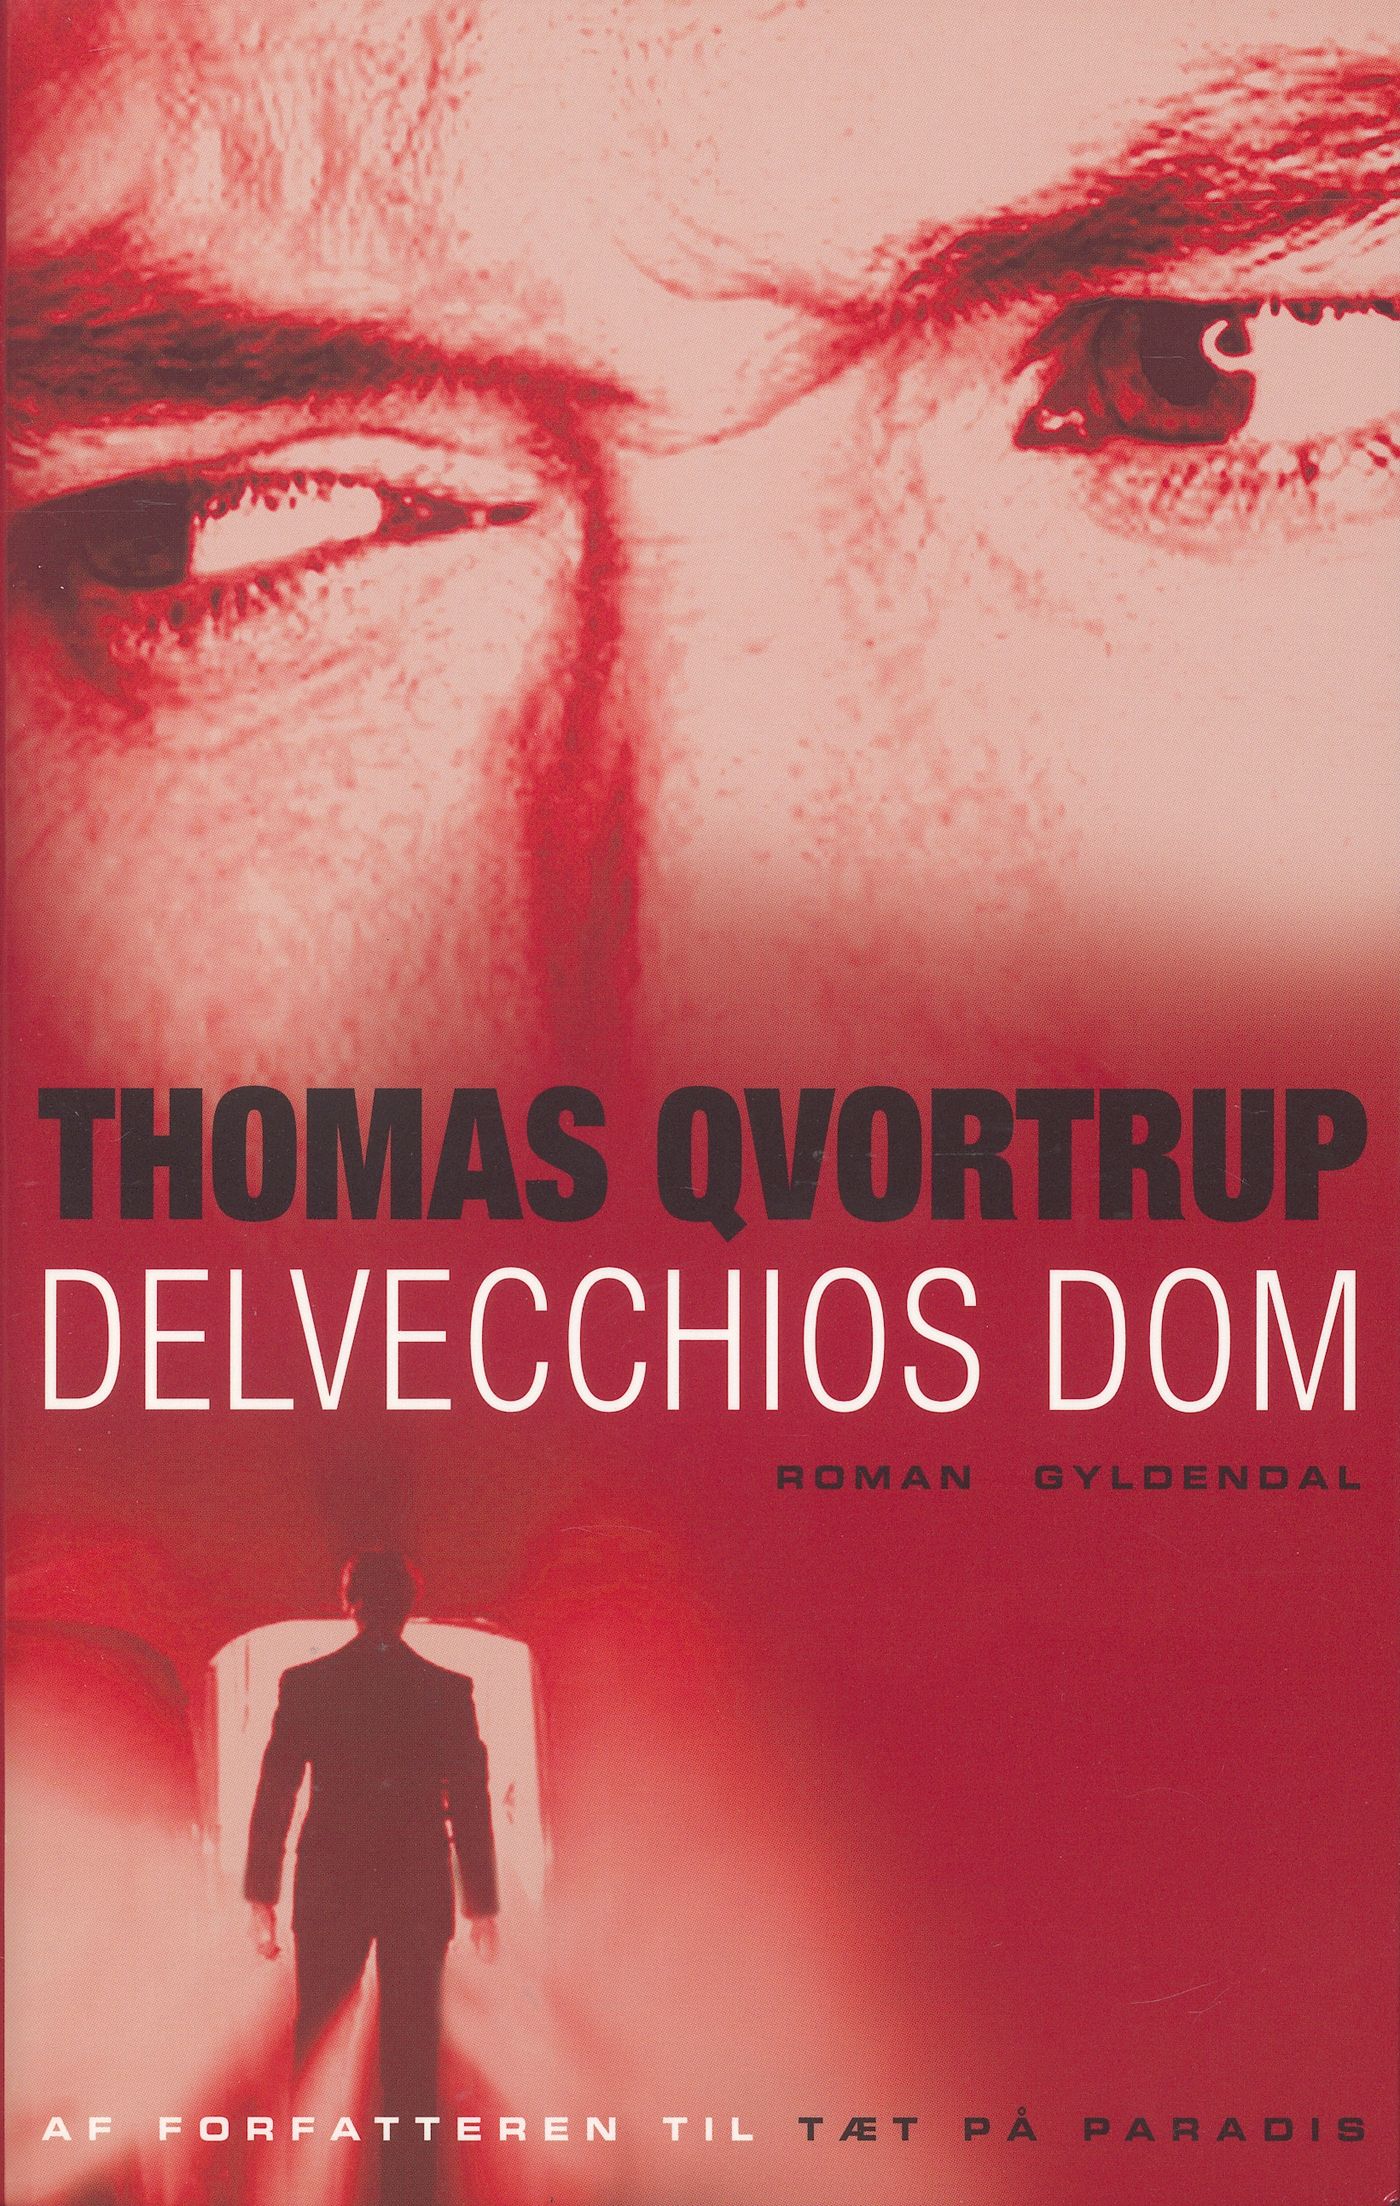 Delvecchios dom, eBook by Thomas Qvortrup